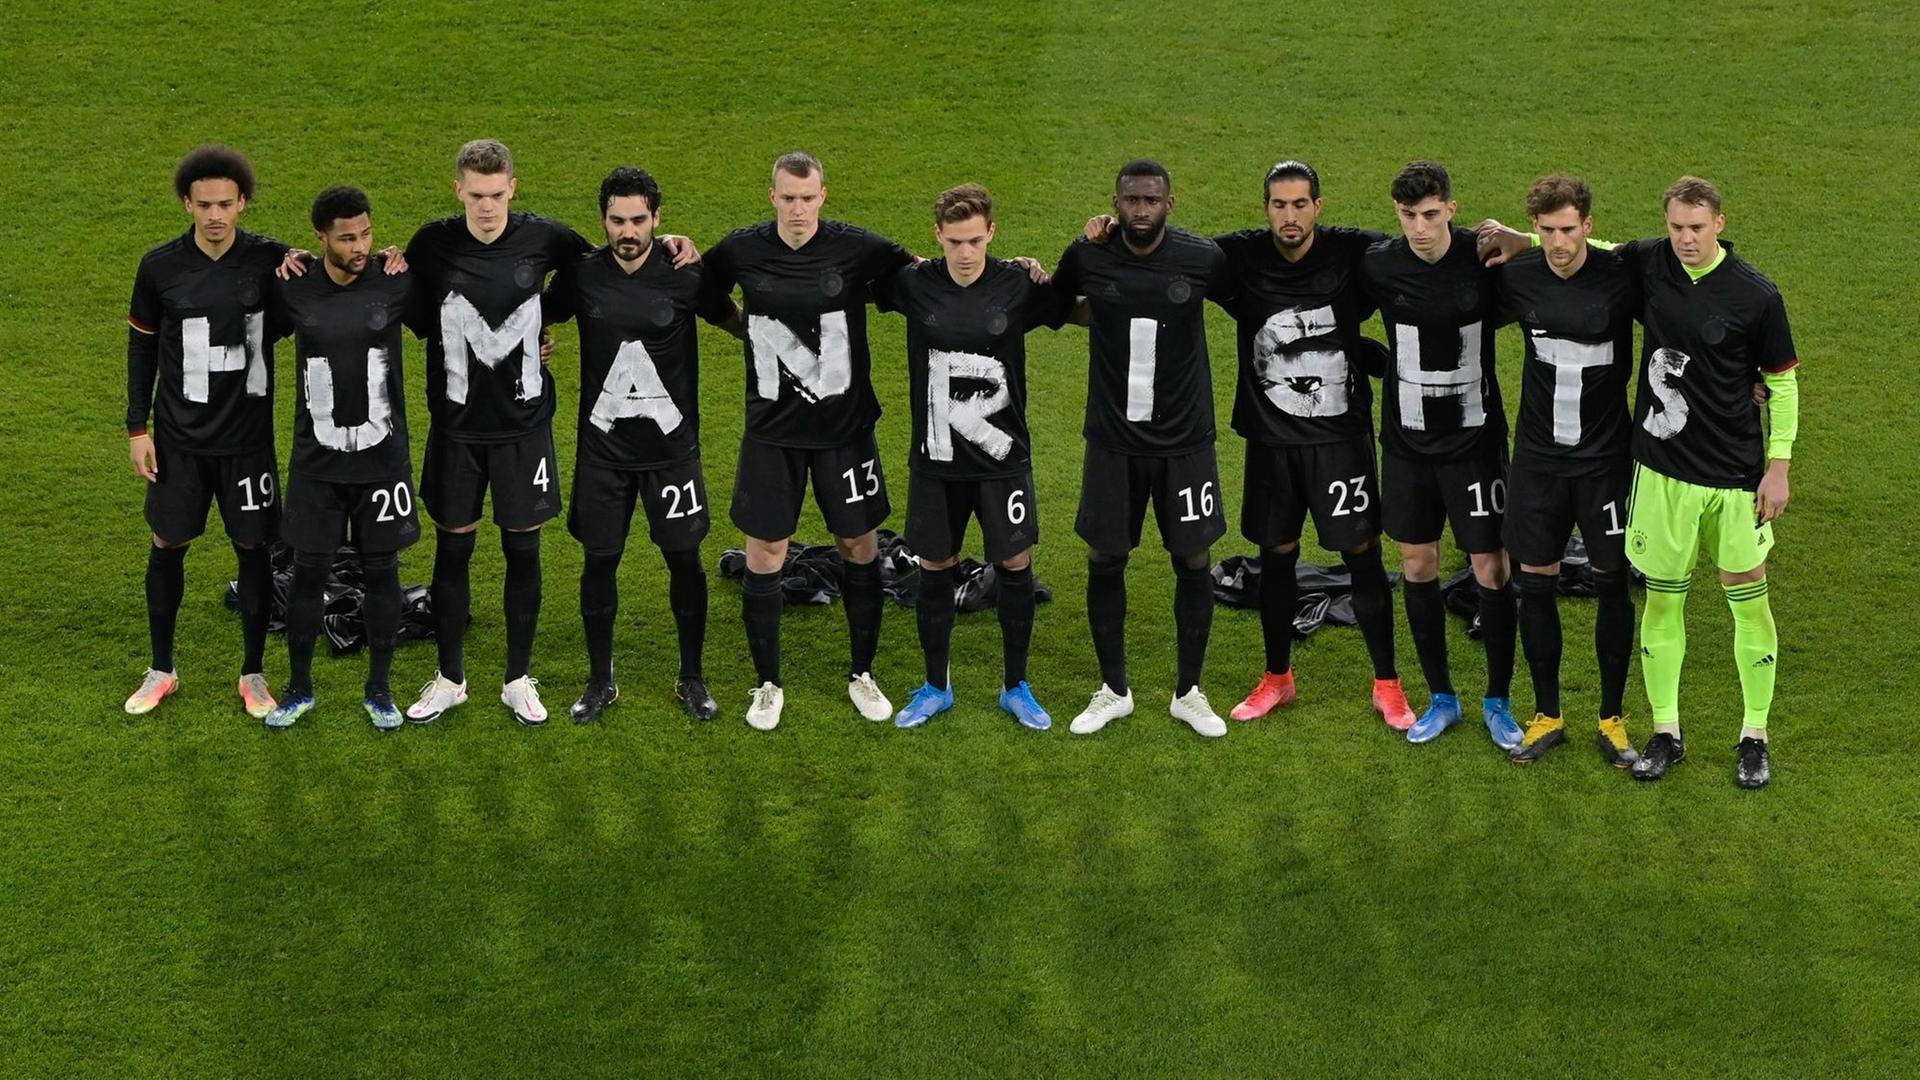 Die deutsche Fußball-Nationalelf mit Buchstaben auf Trikots, die zusammen "Human Rights", also "Menschen-Rechte", ergeben